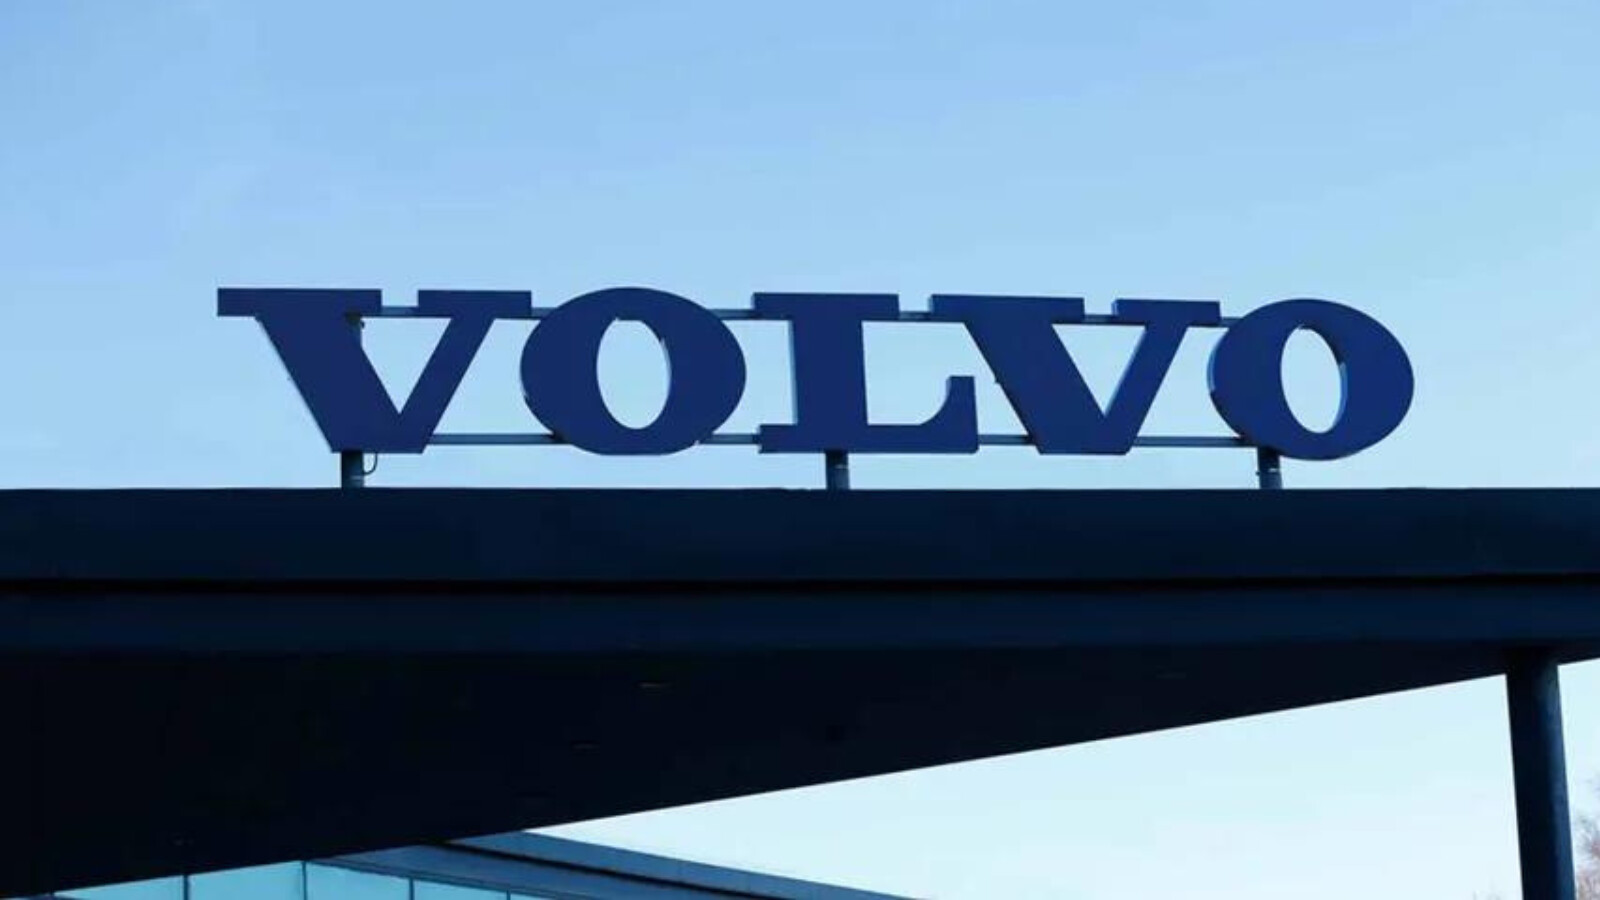 Logo Volvo 